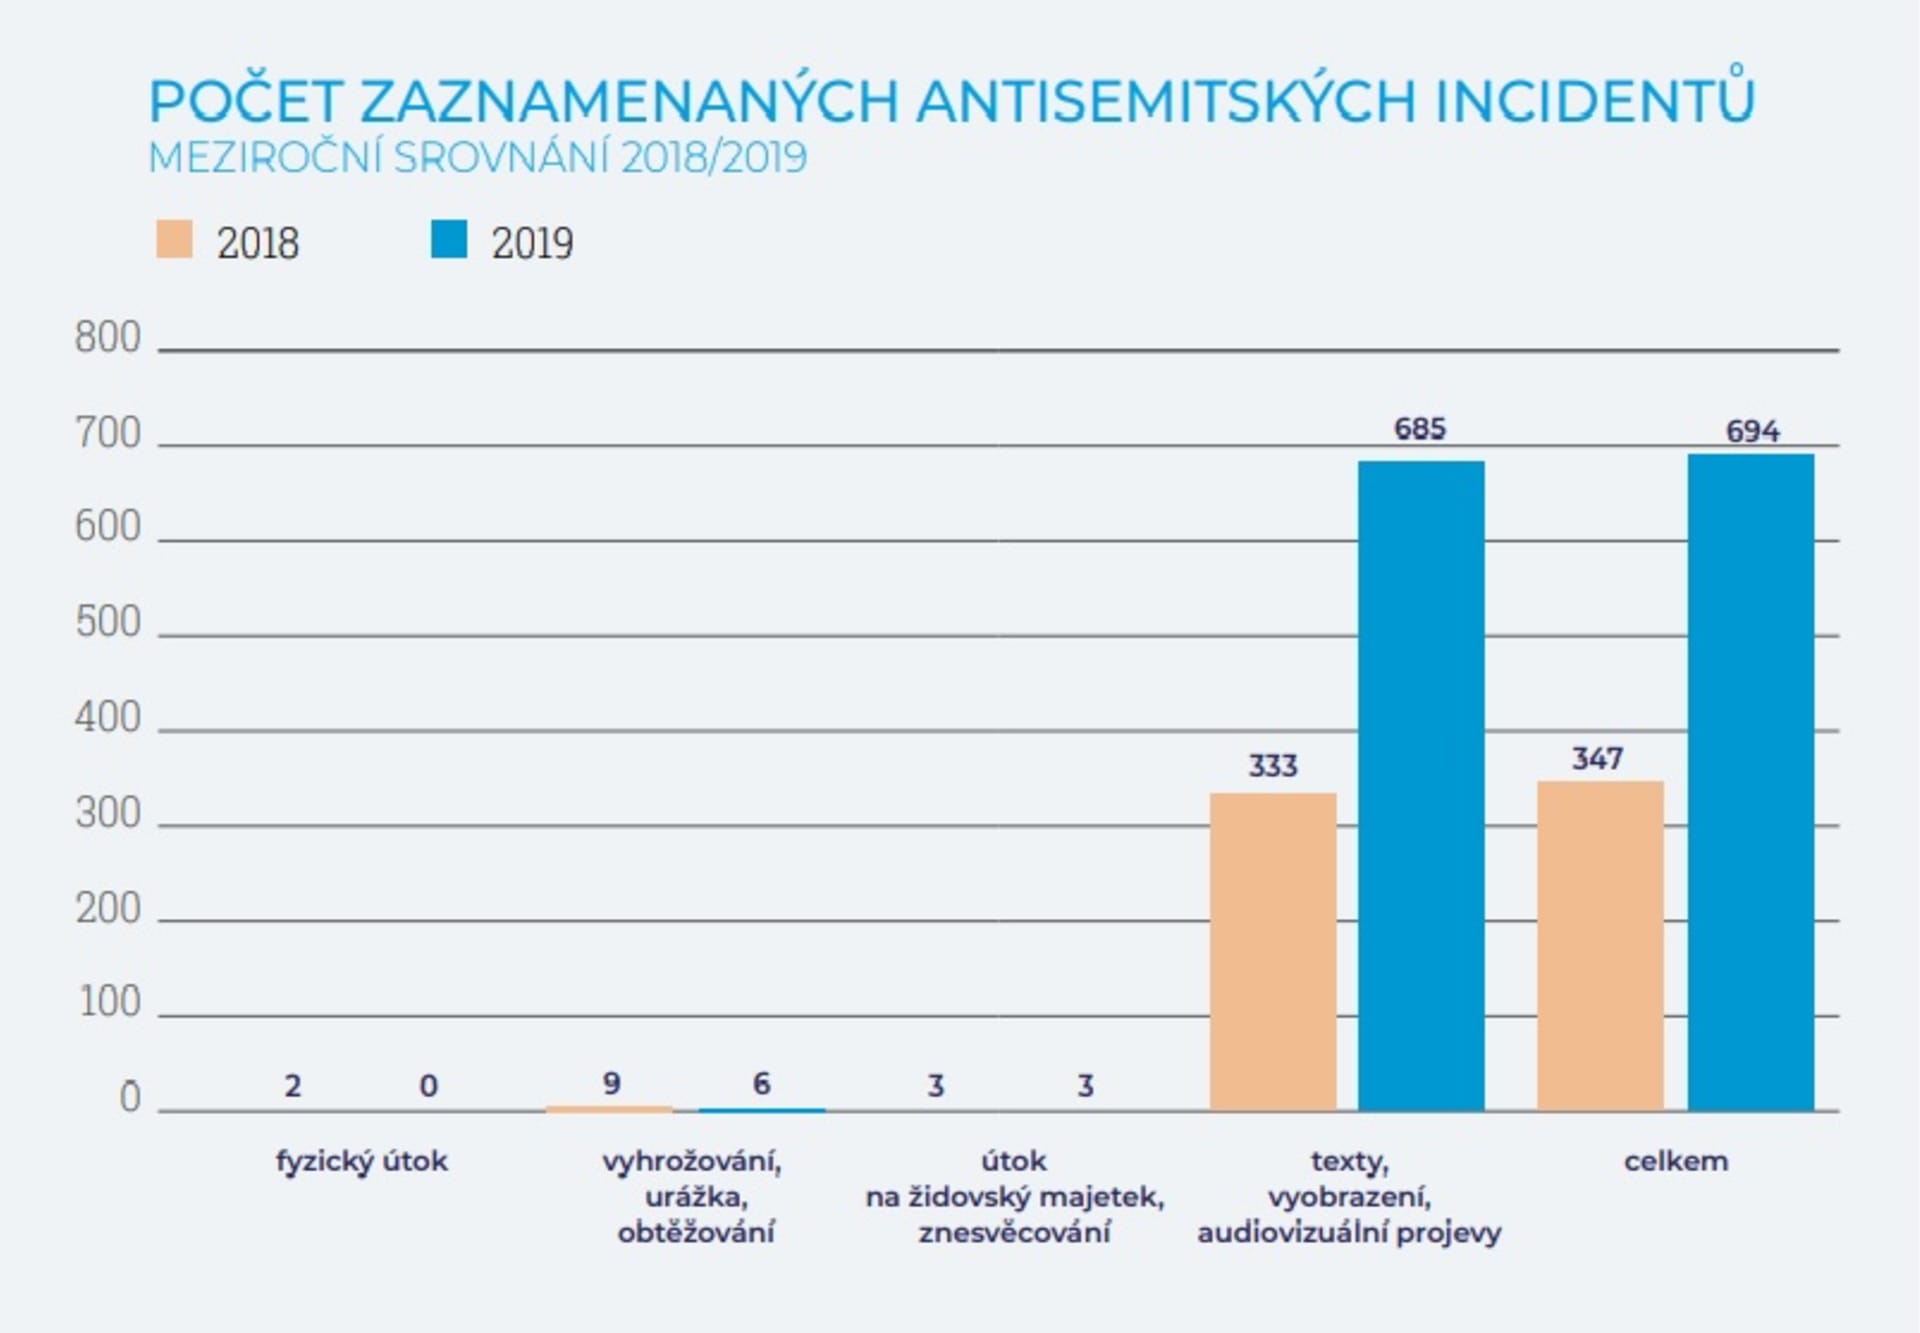 POčet antisemitských incidentů vloni vzrostl.